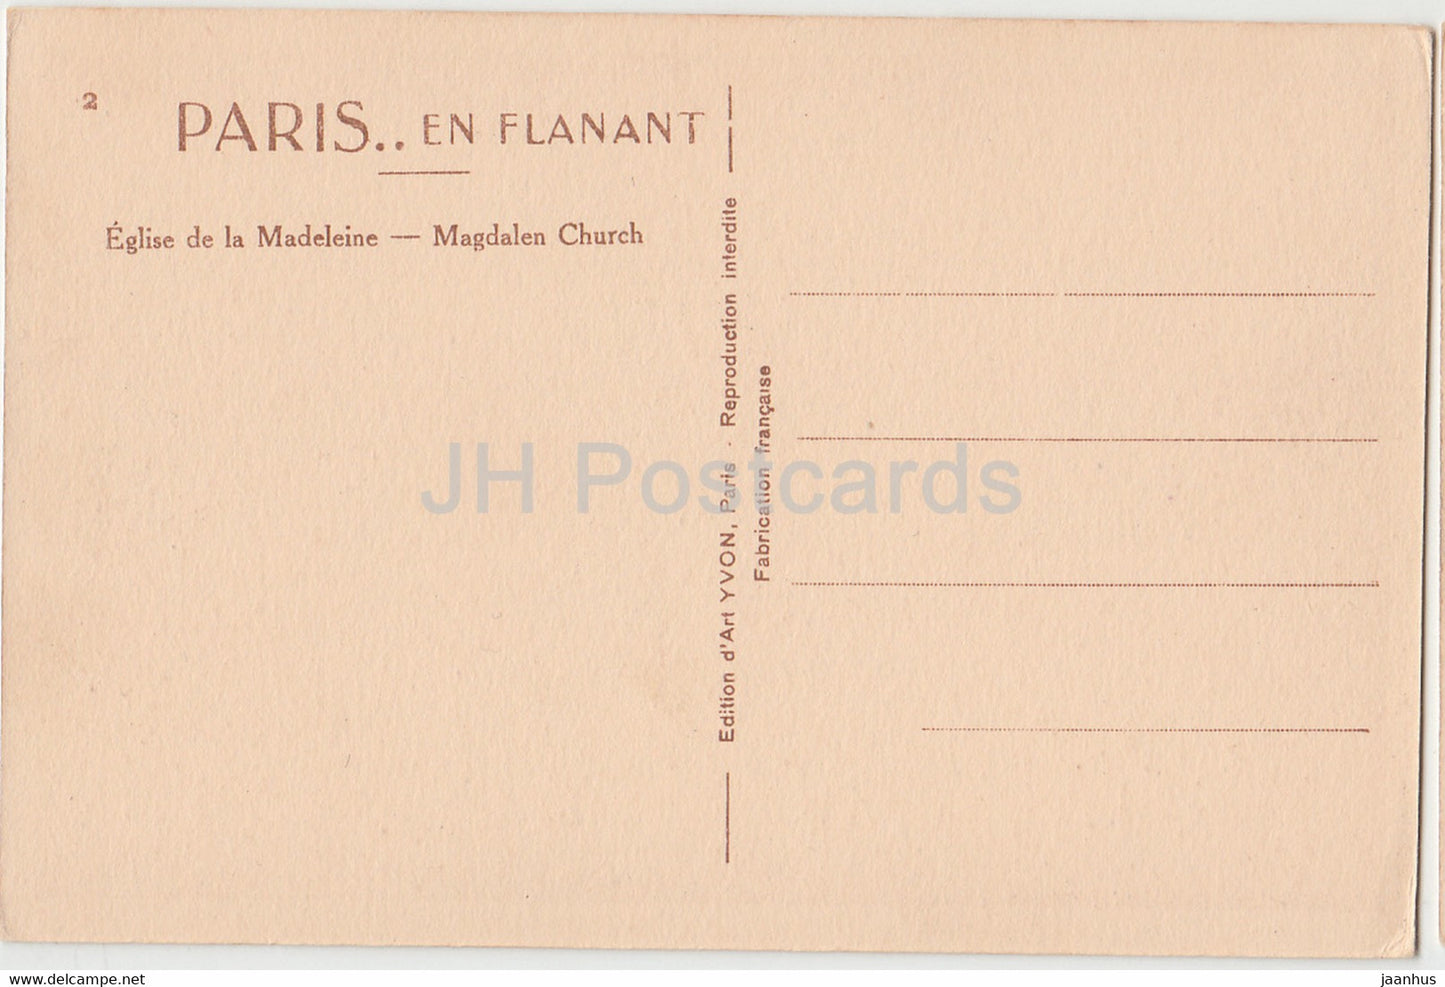 Paris - Eglise de la Madeleine - Église de la Madeleine - vieille voiture - carte postale ancienne - France - inutilisée